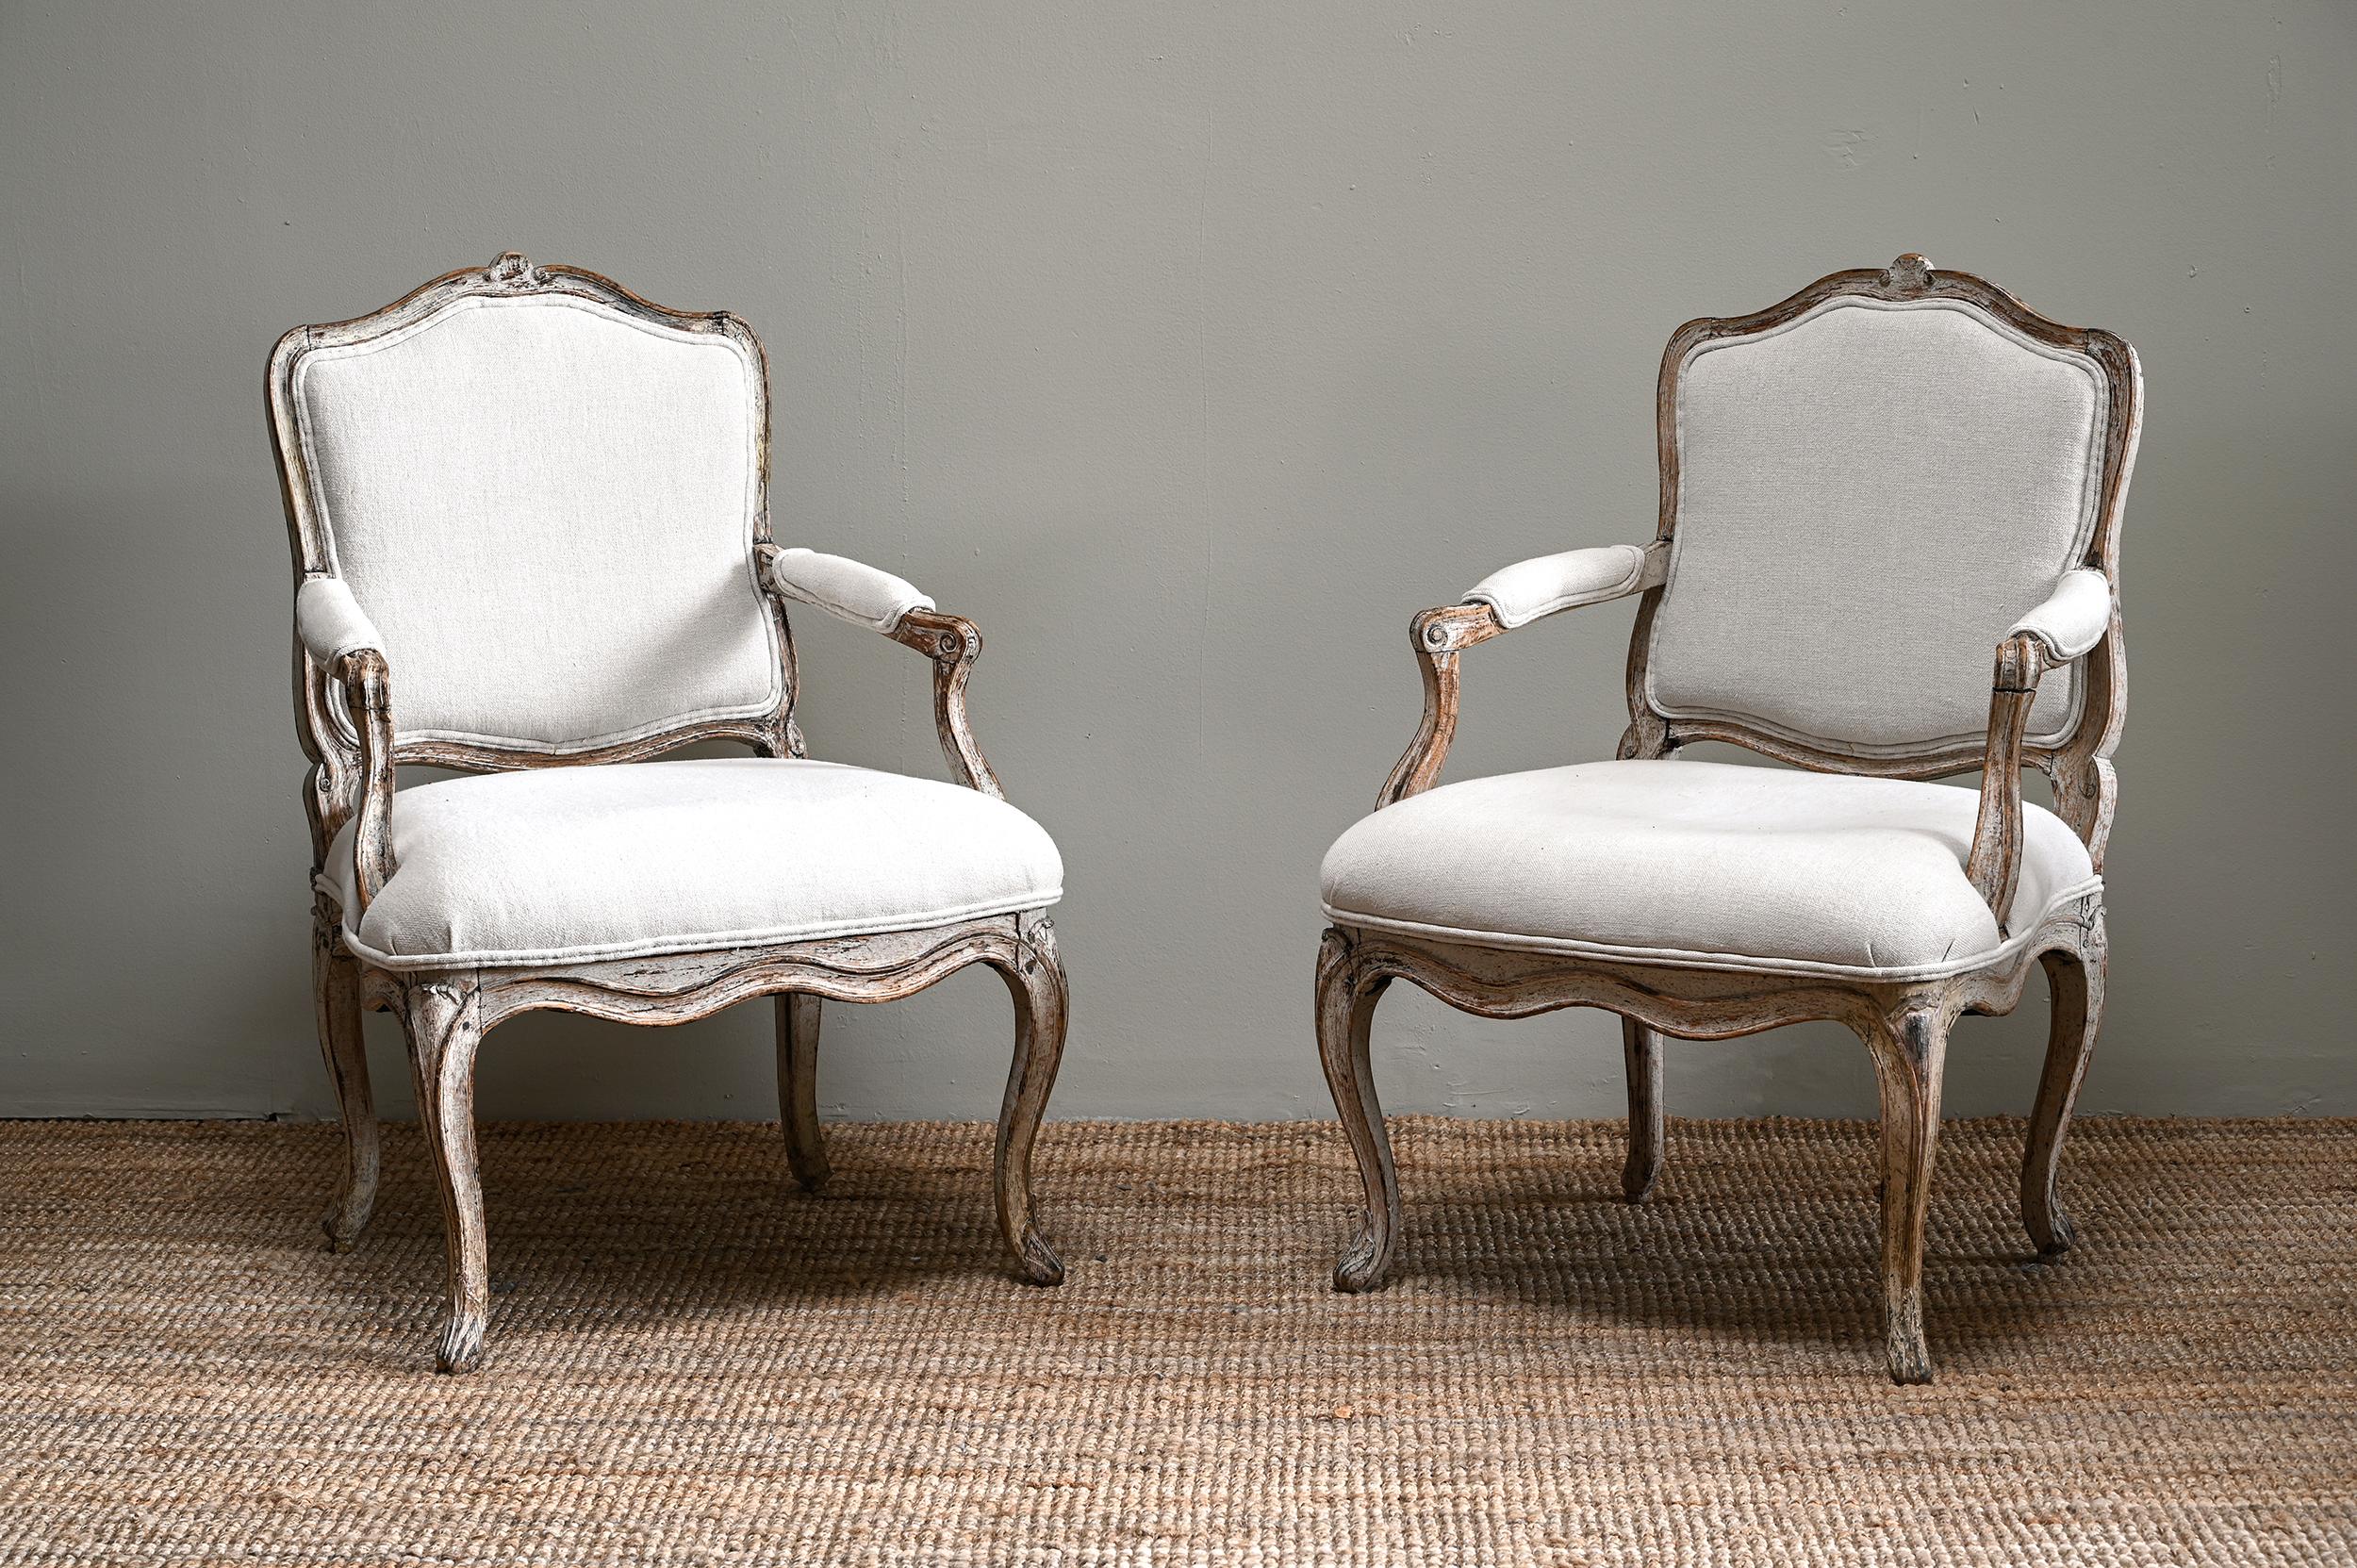 Belle paire de fauteuils rococo français du 18ème siècle avec de grandes proportions et dans leur finition originale avec une bonne patine. Nouvellement tapissé. Ca 1750 France.